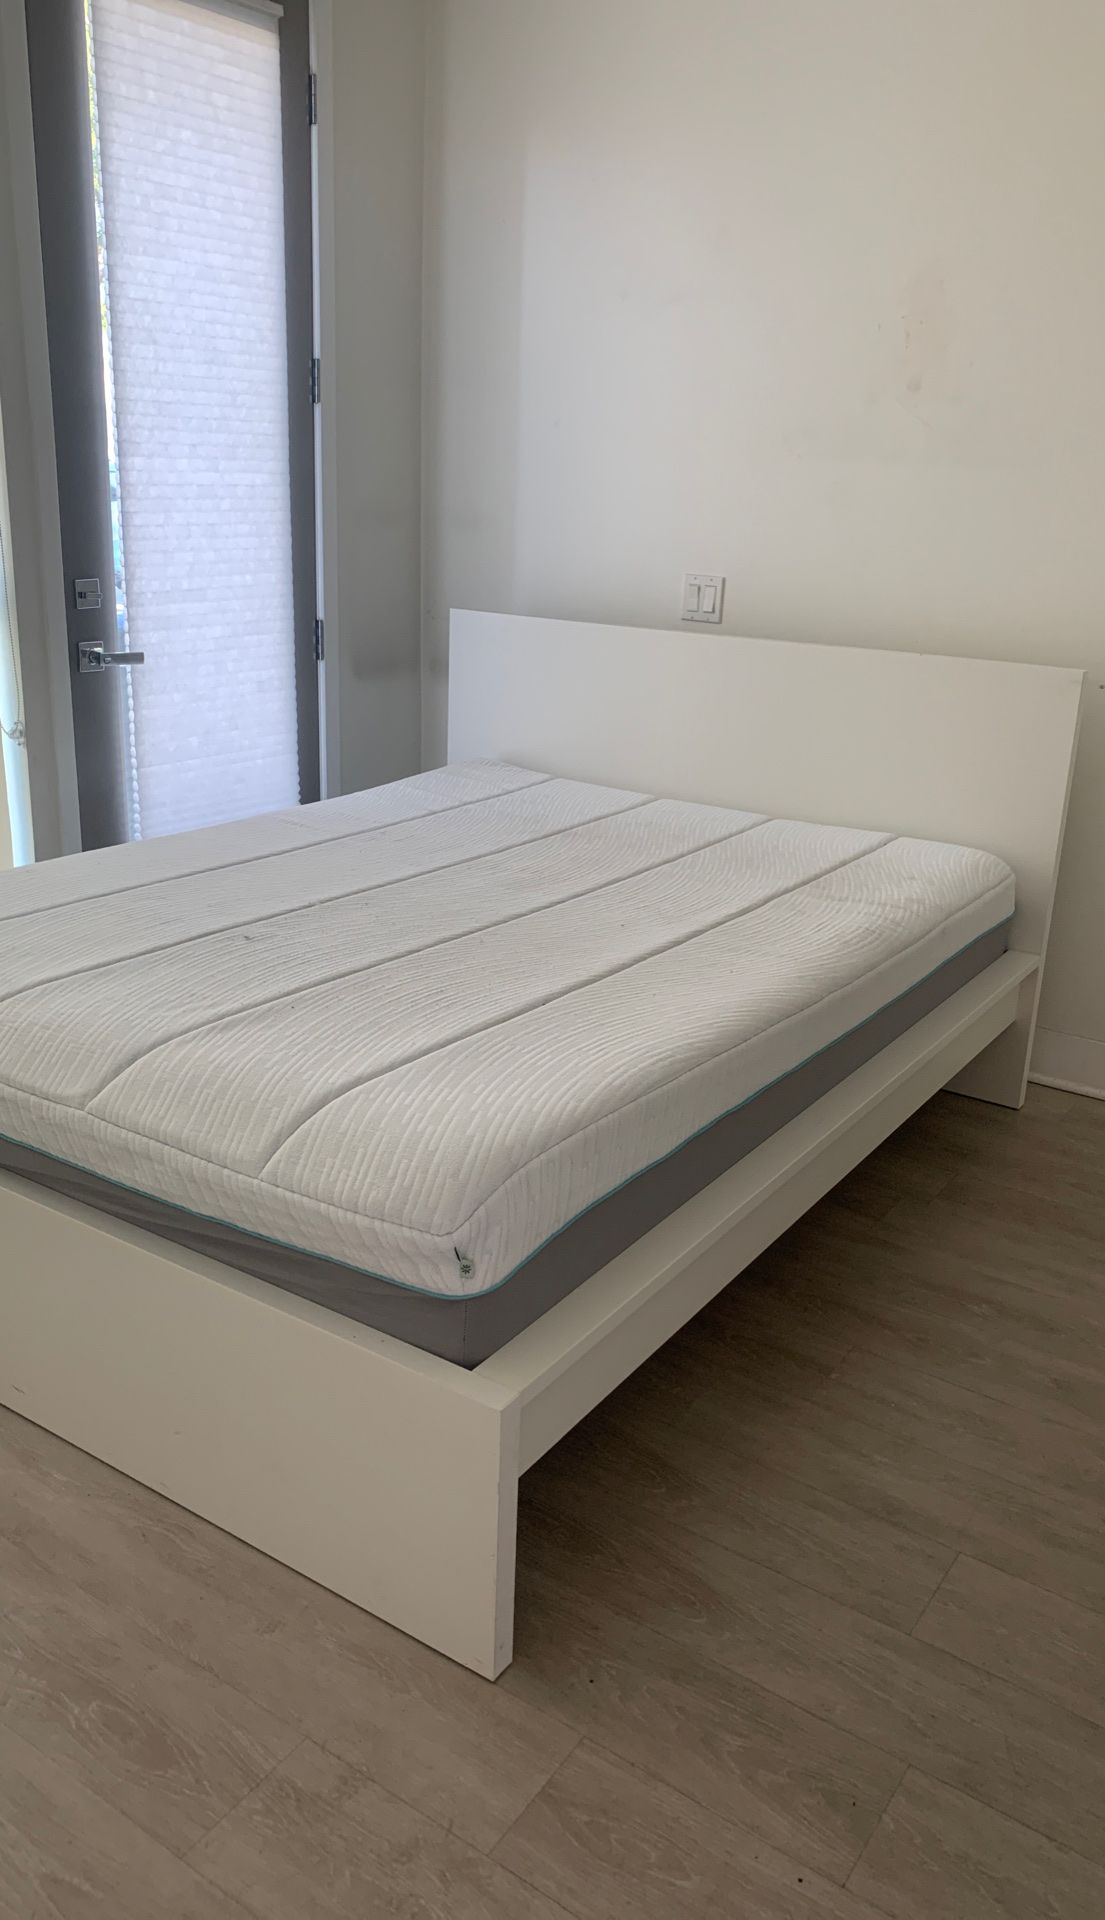 Queen size ‘Memory Foam’ mattress & Bed Frame